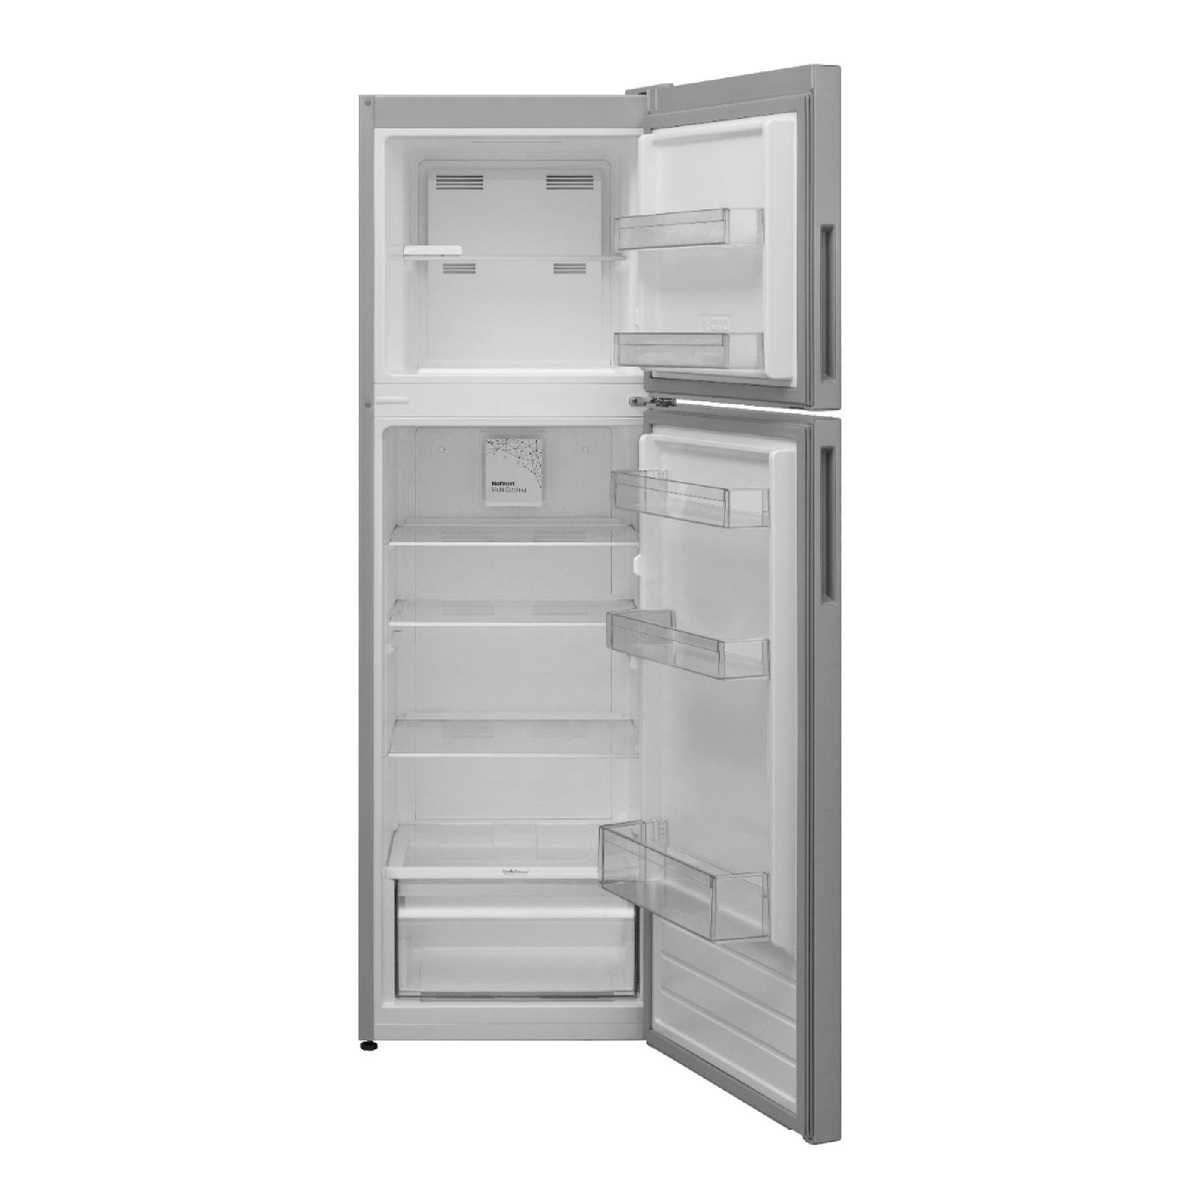 Terim Top Freezer Double Door Refrigerator, 330 L, Silver, TERR330VS